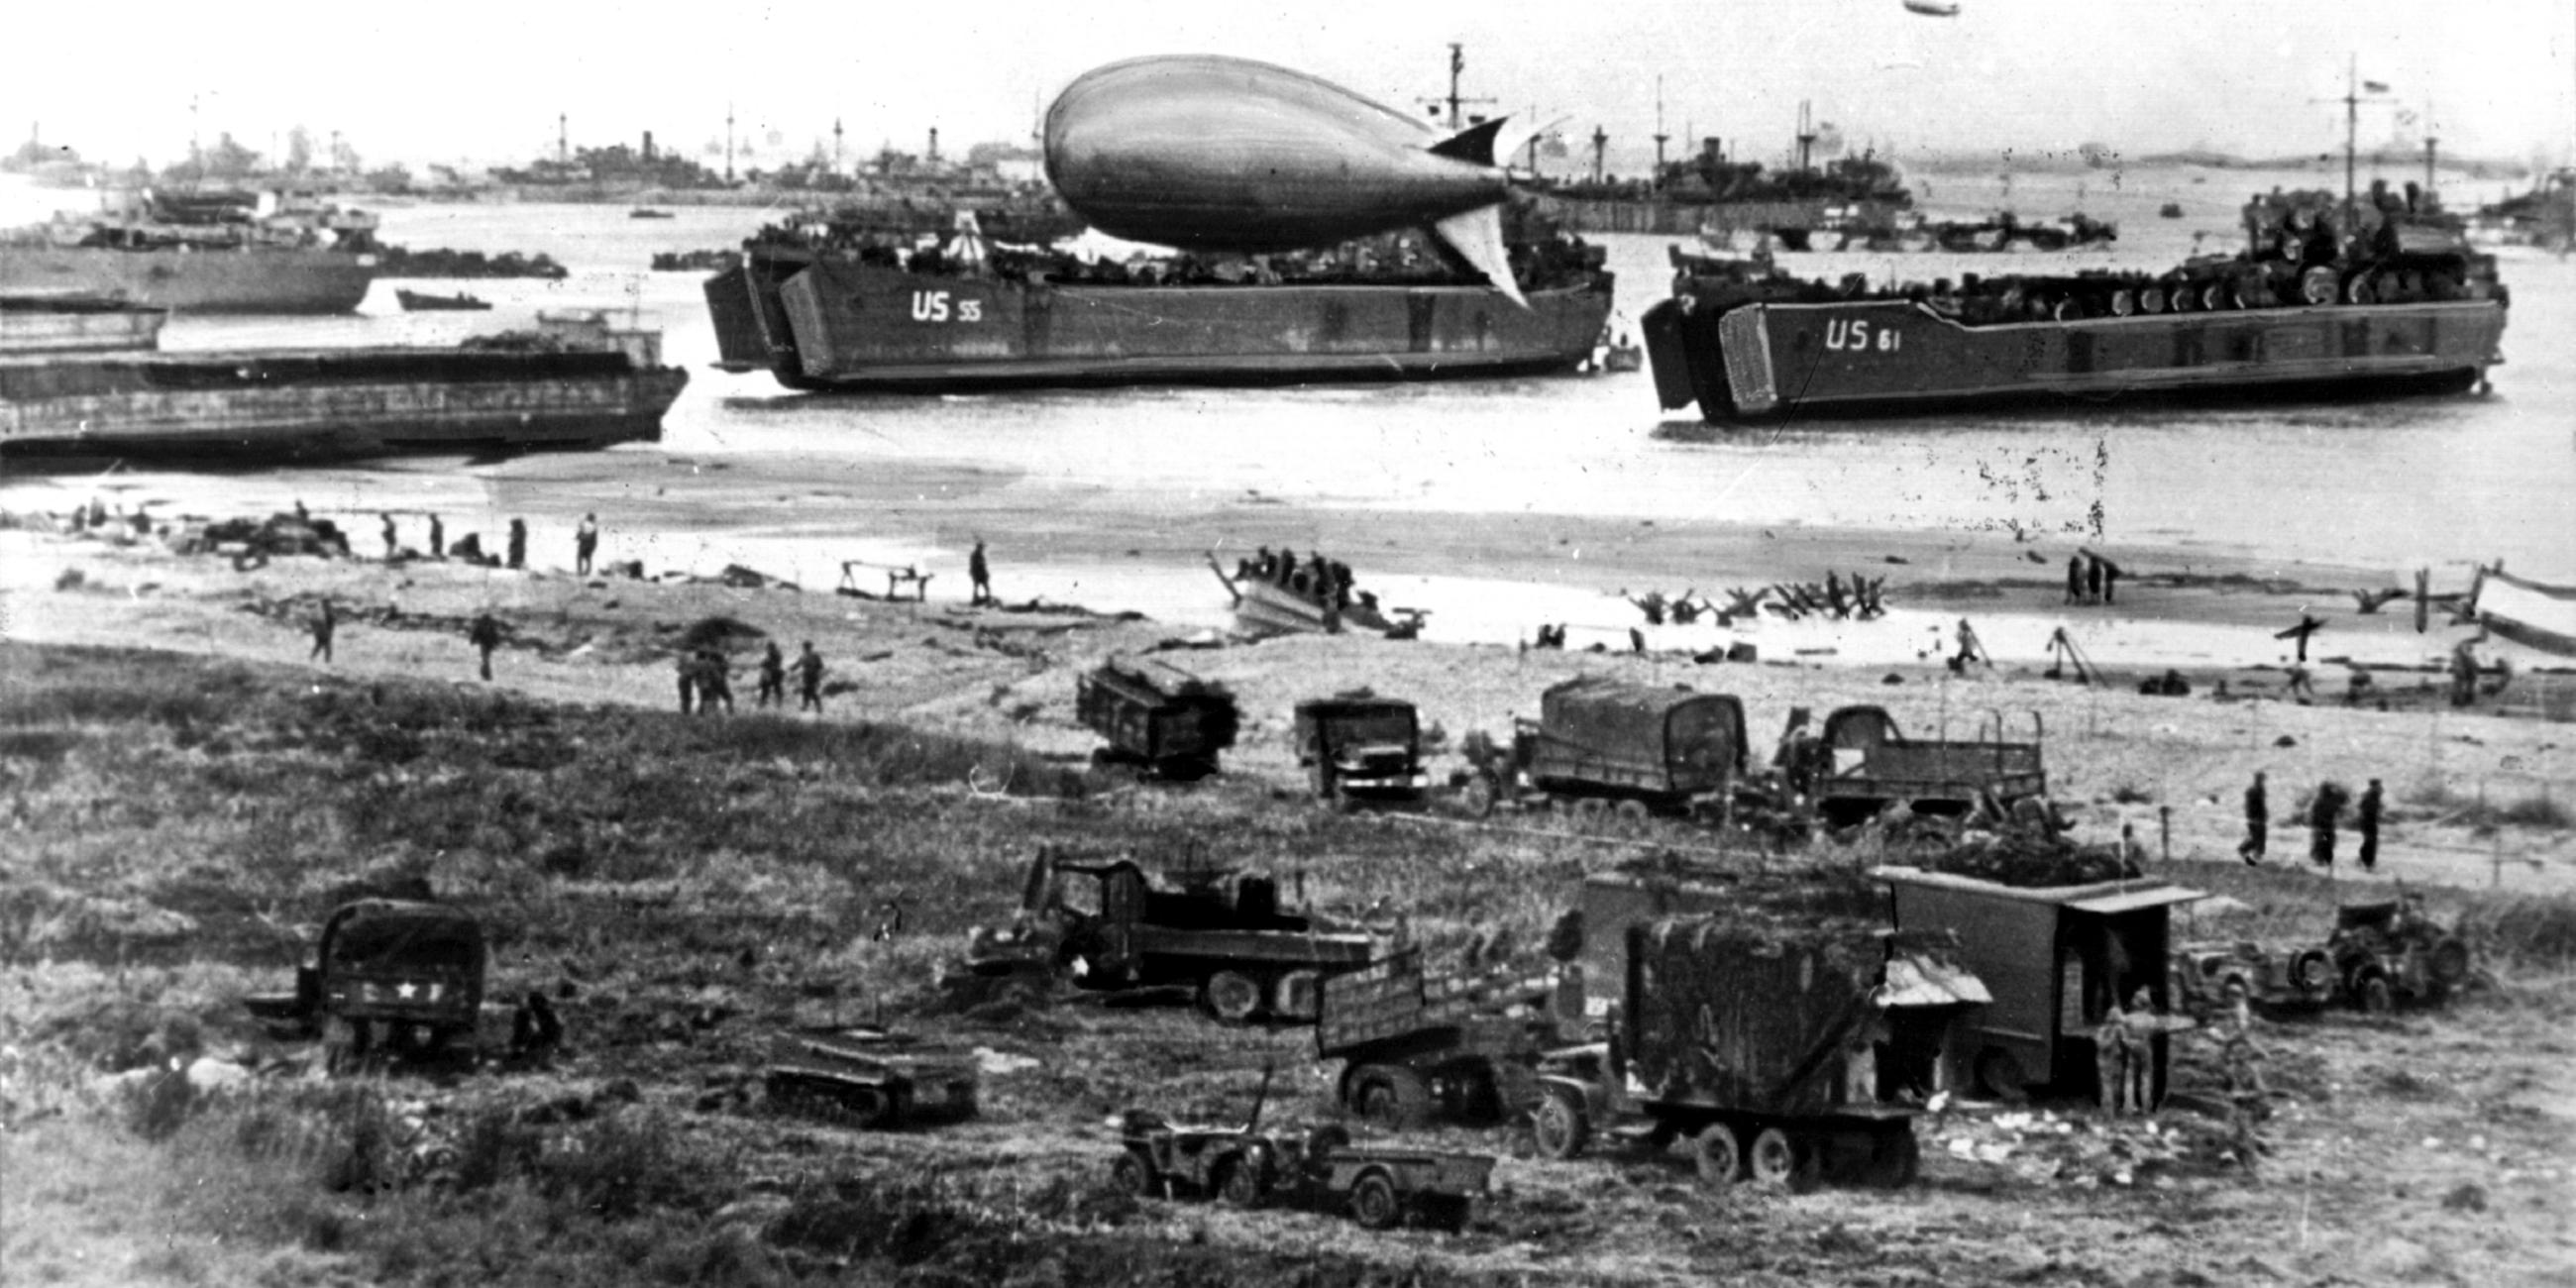 "Spuren des Krieges - Normandie 1944": Blick auf einen Küstenabschnitt während der Invasion der Alliierten im Zweiten Weltkrieg in der Normandie an der auch Luftschiffe beteiligt waren.